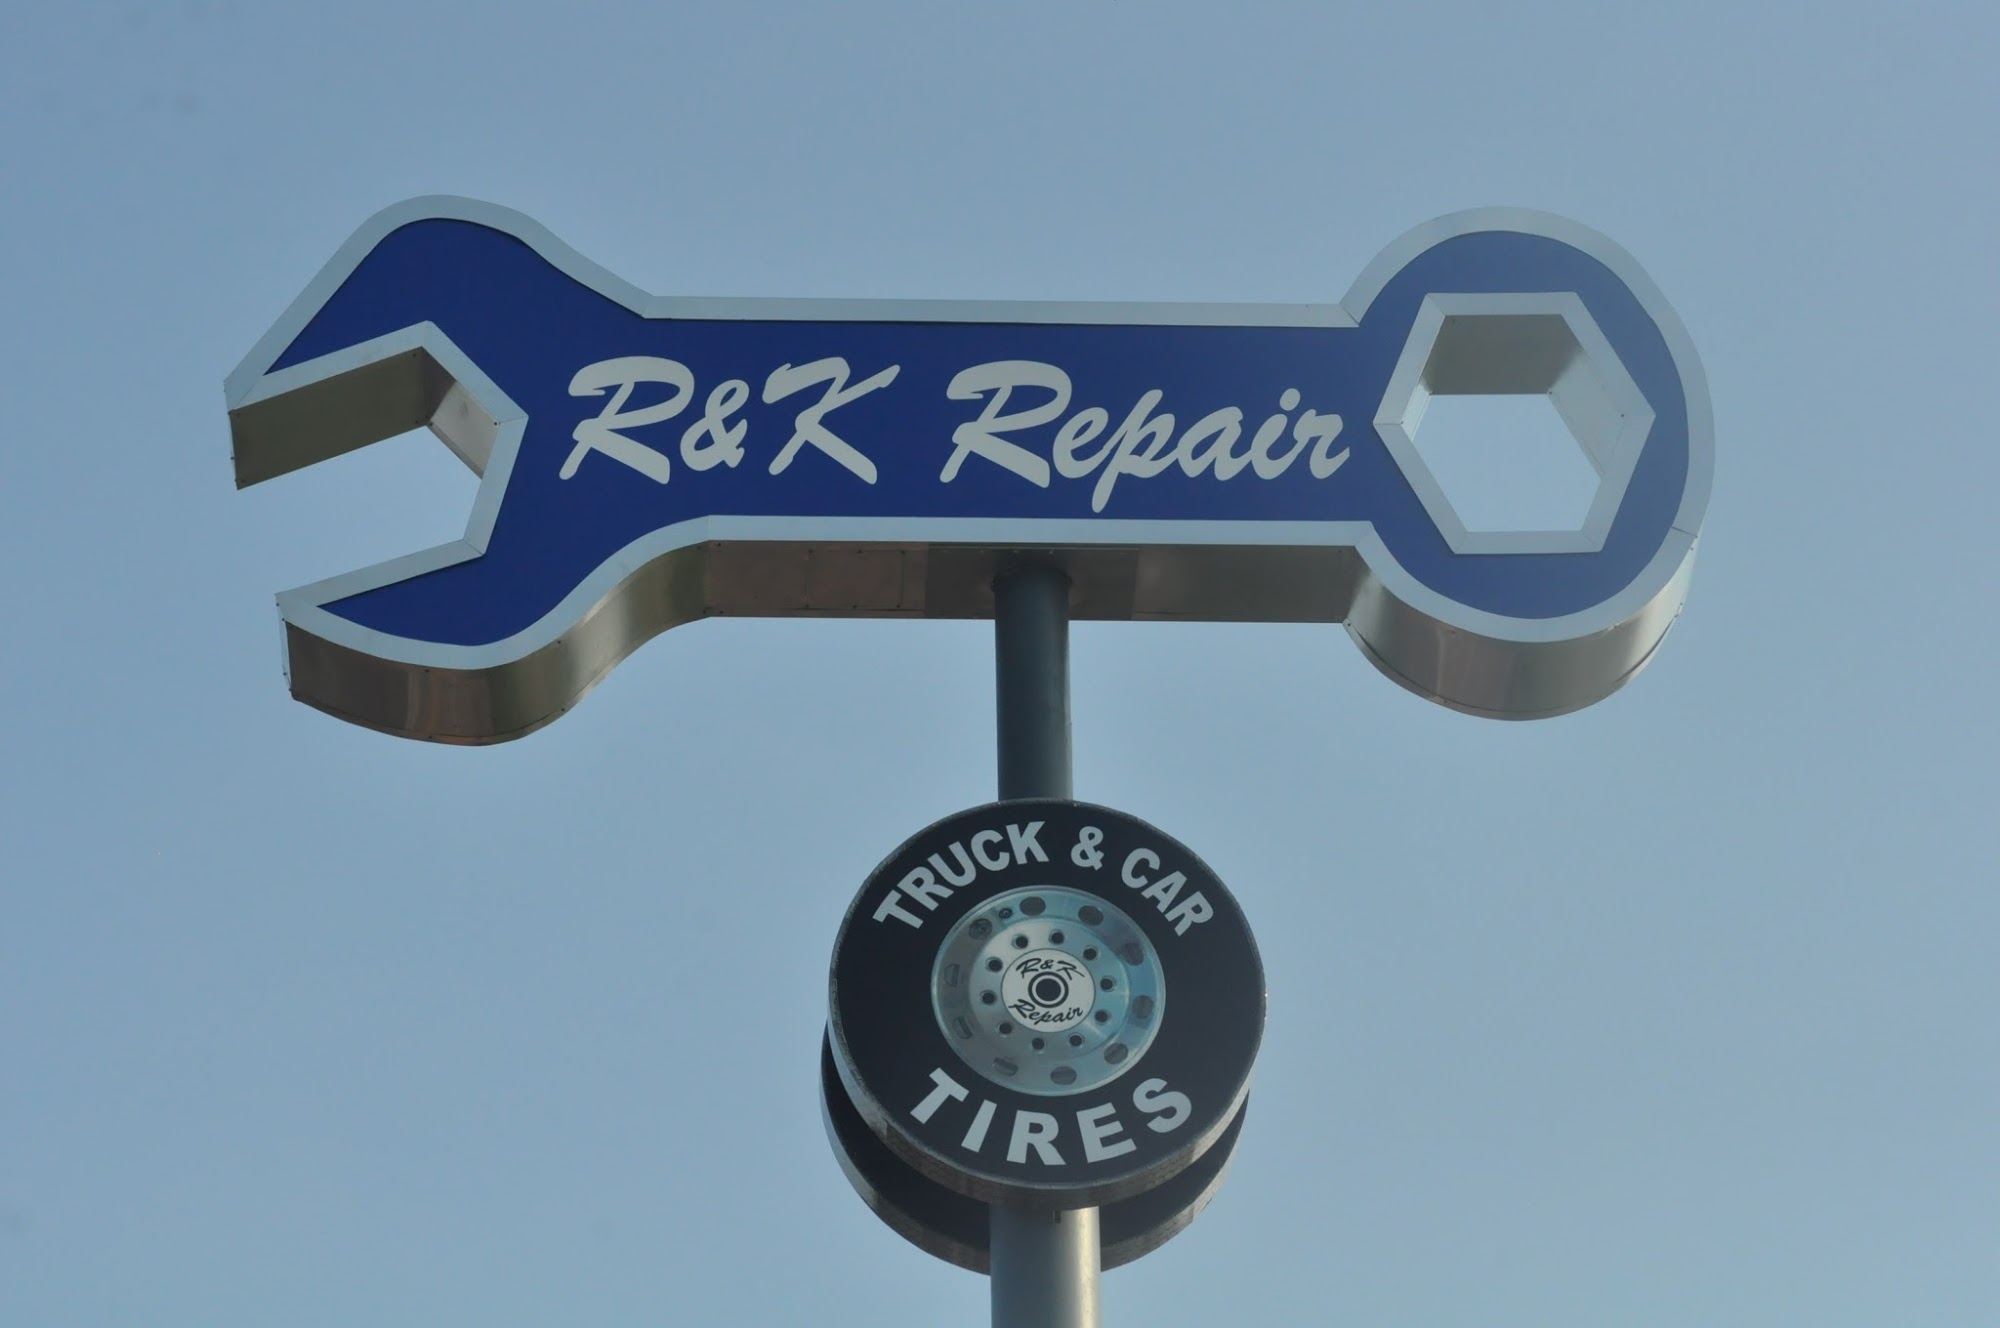 R&K Repair Services, Inc